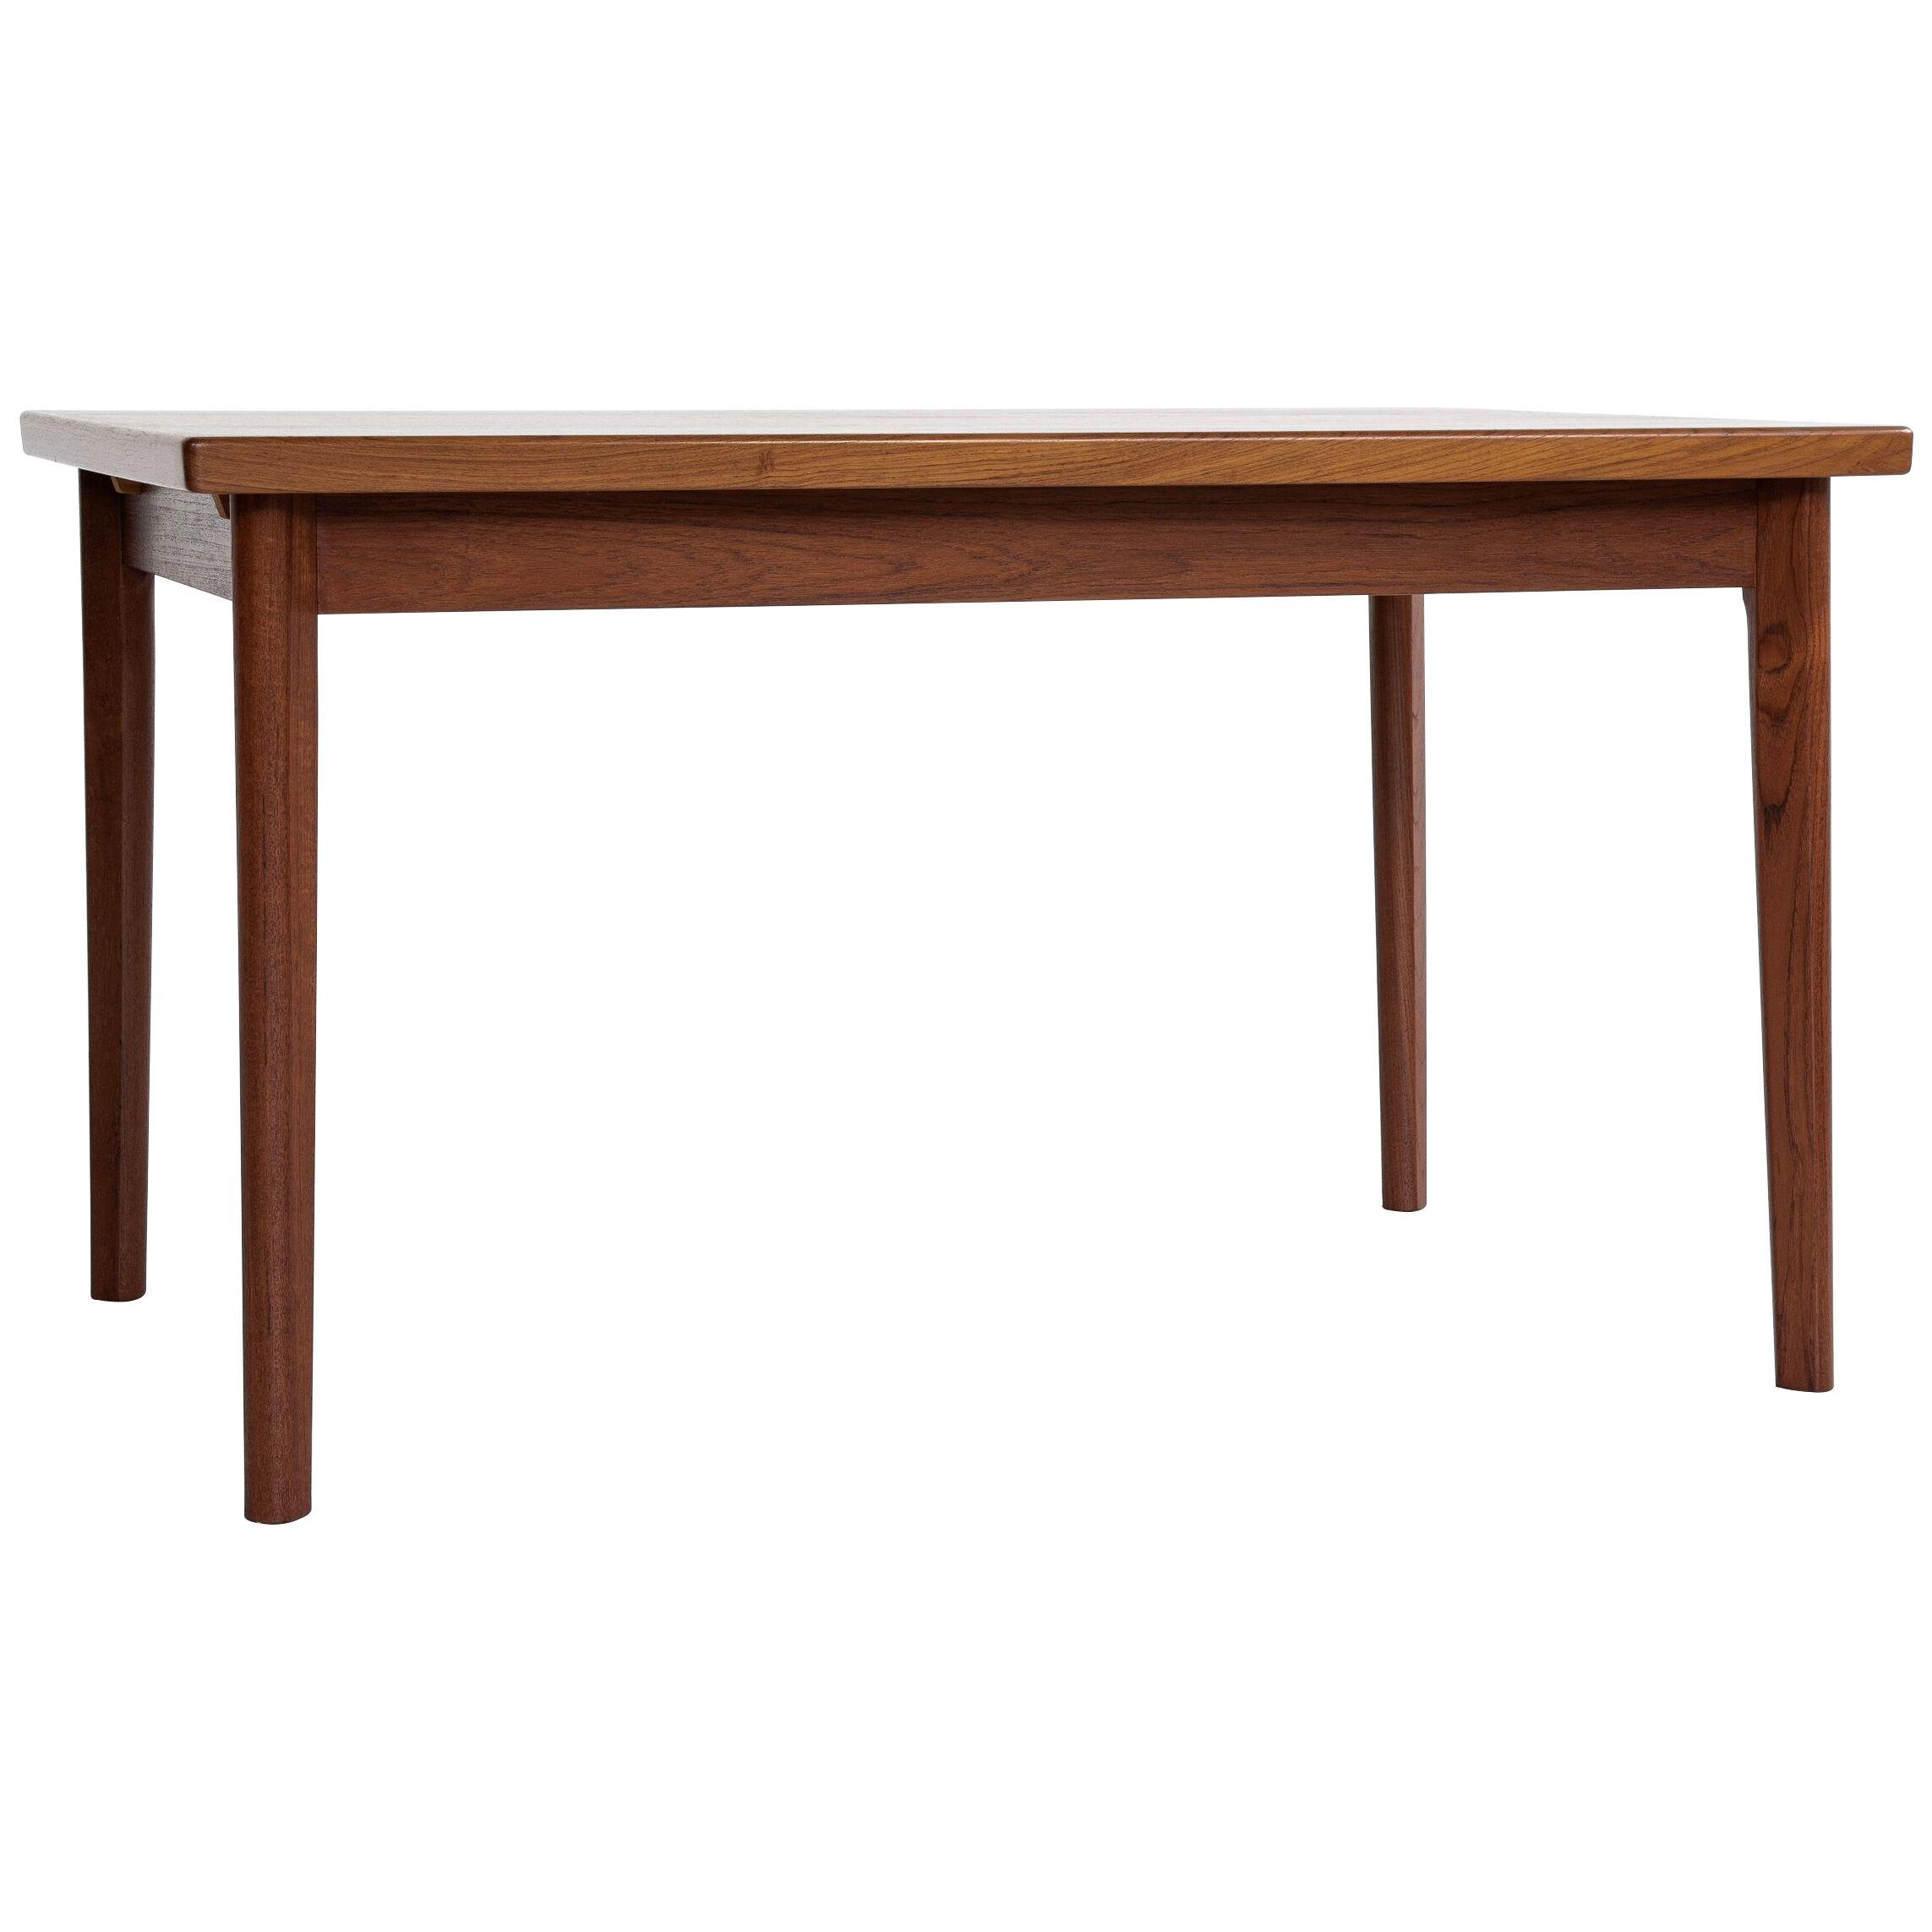 Midcentury Danish rectangular dining table in teak 1960s - hidden extensions